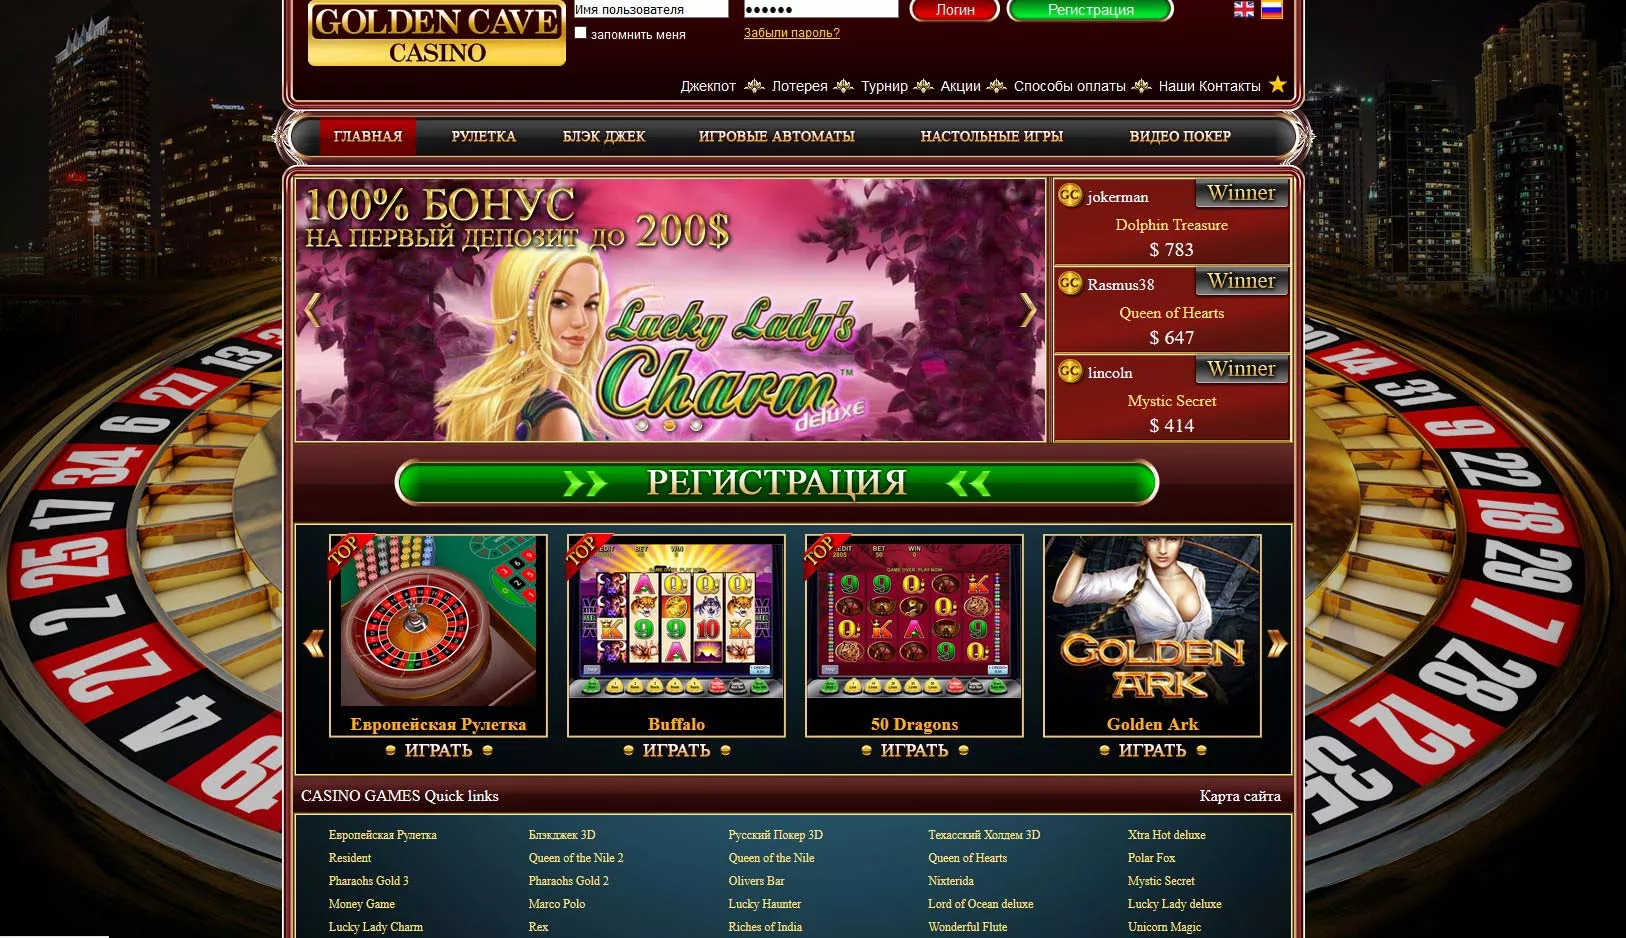 Игровые автоматы играть бесплатно golden cave casino симулятор казино играть i